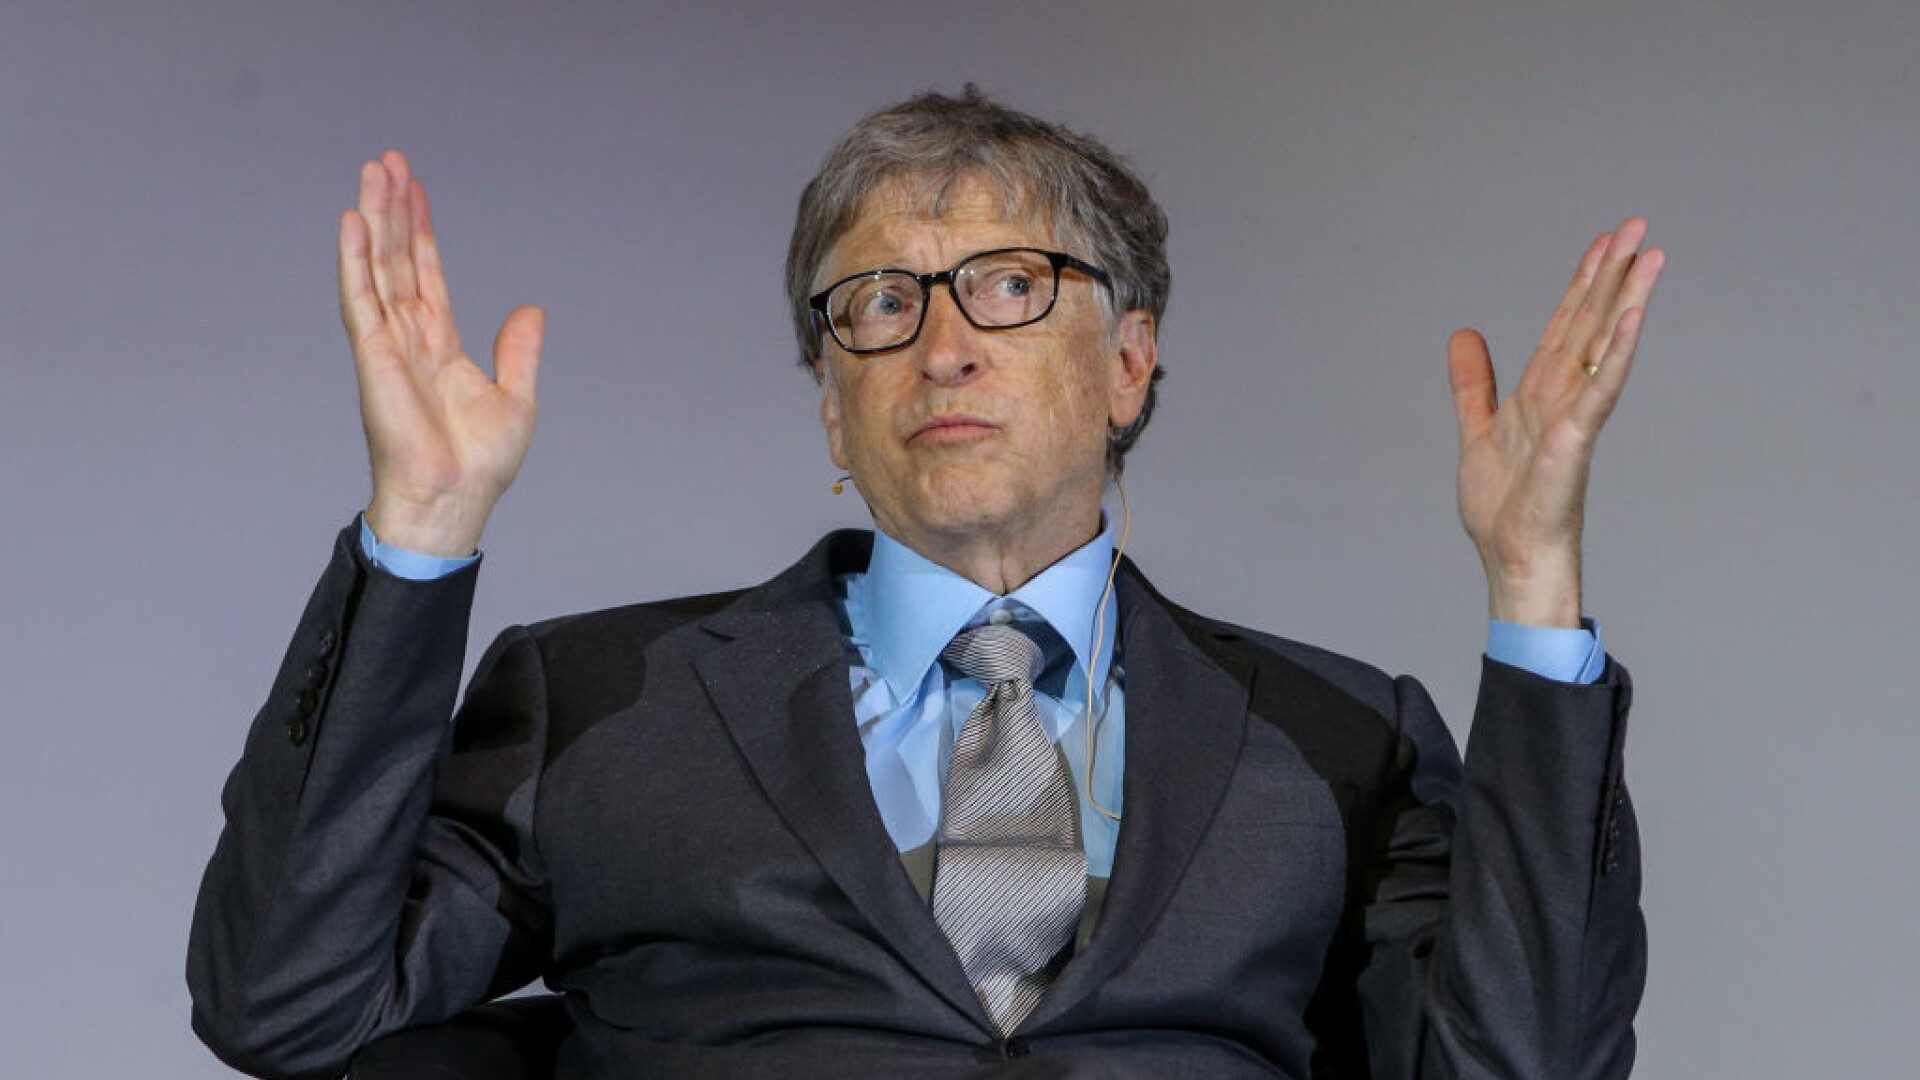 Cui mulțumește Bill Gates pentru vaccinurile anti-Covid: ”Sunt miracole”. Miliardarul compară măștile cu pantalonii